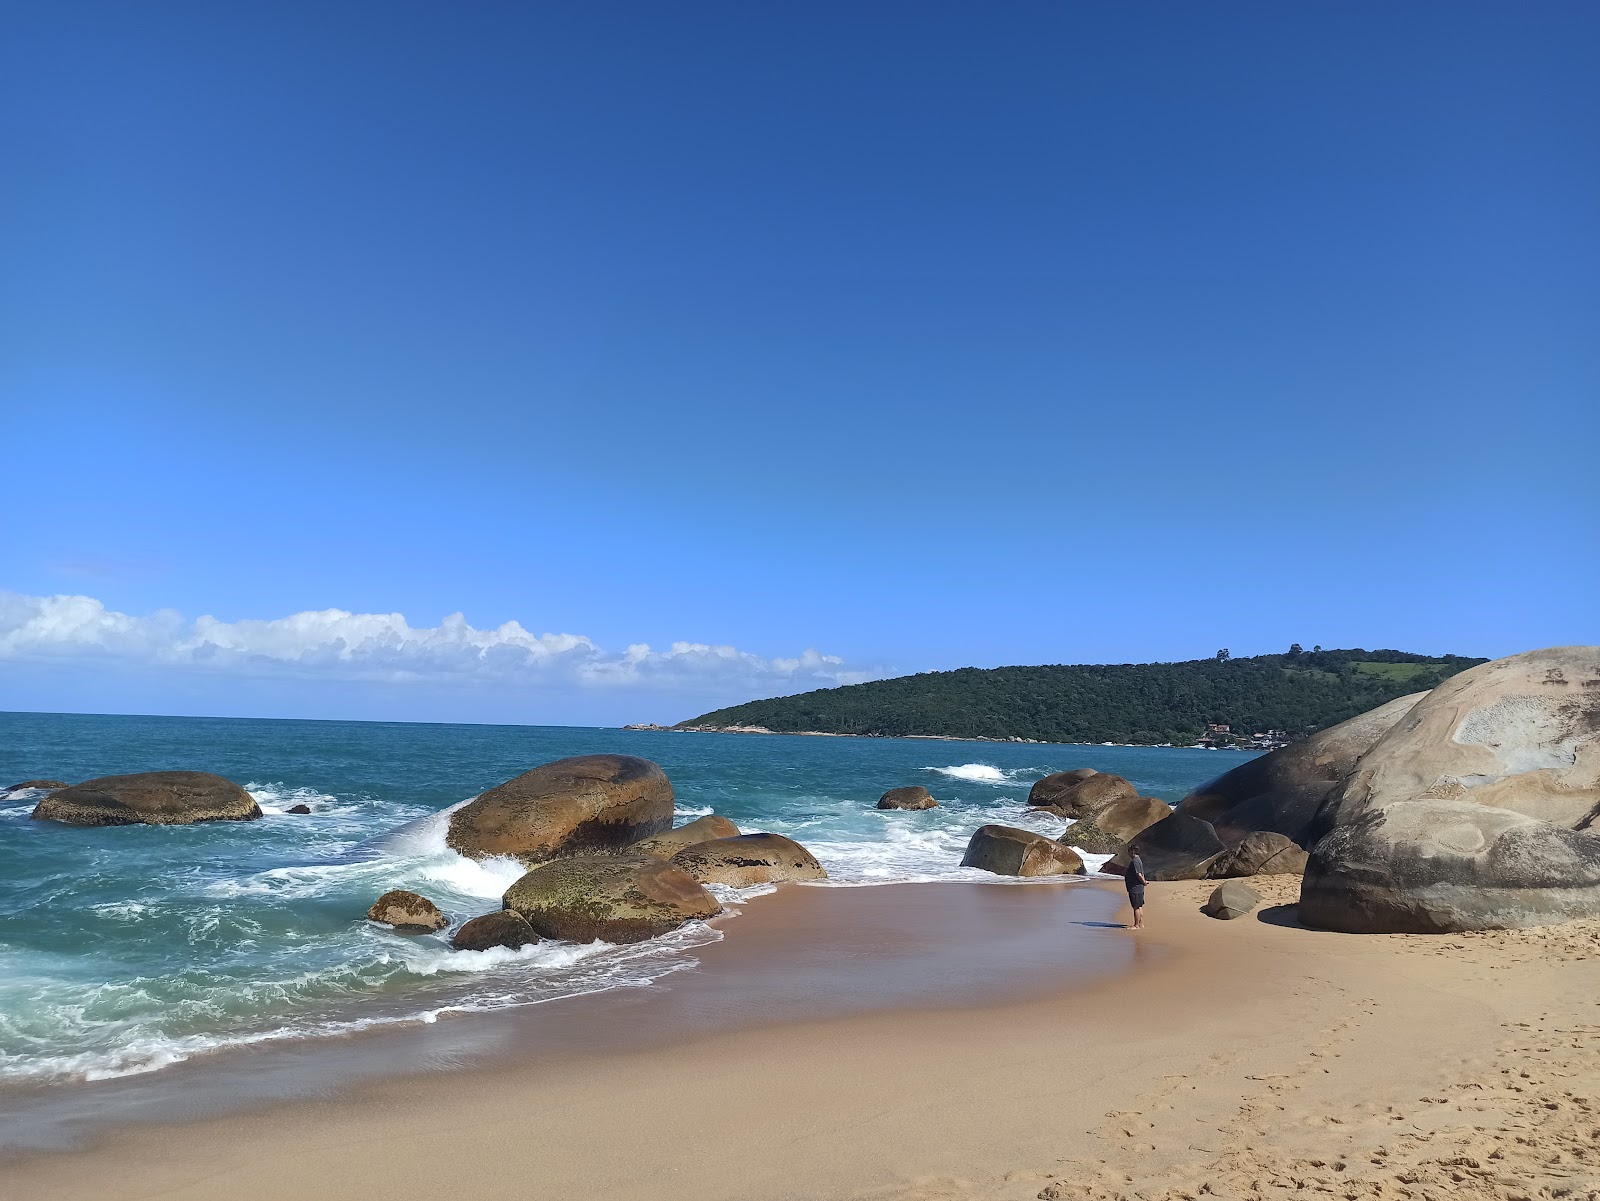 Valokuva Praia de Taquarinhasista. sijaitsee luonnonalueella